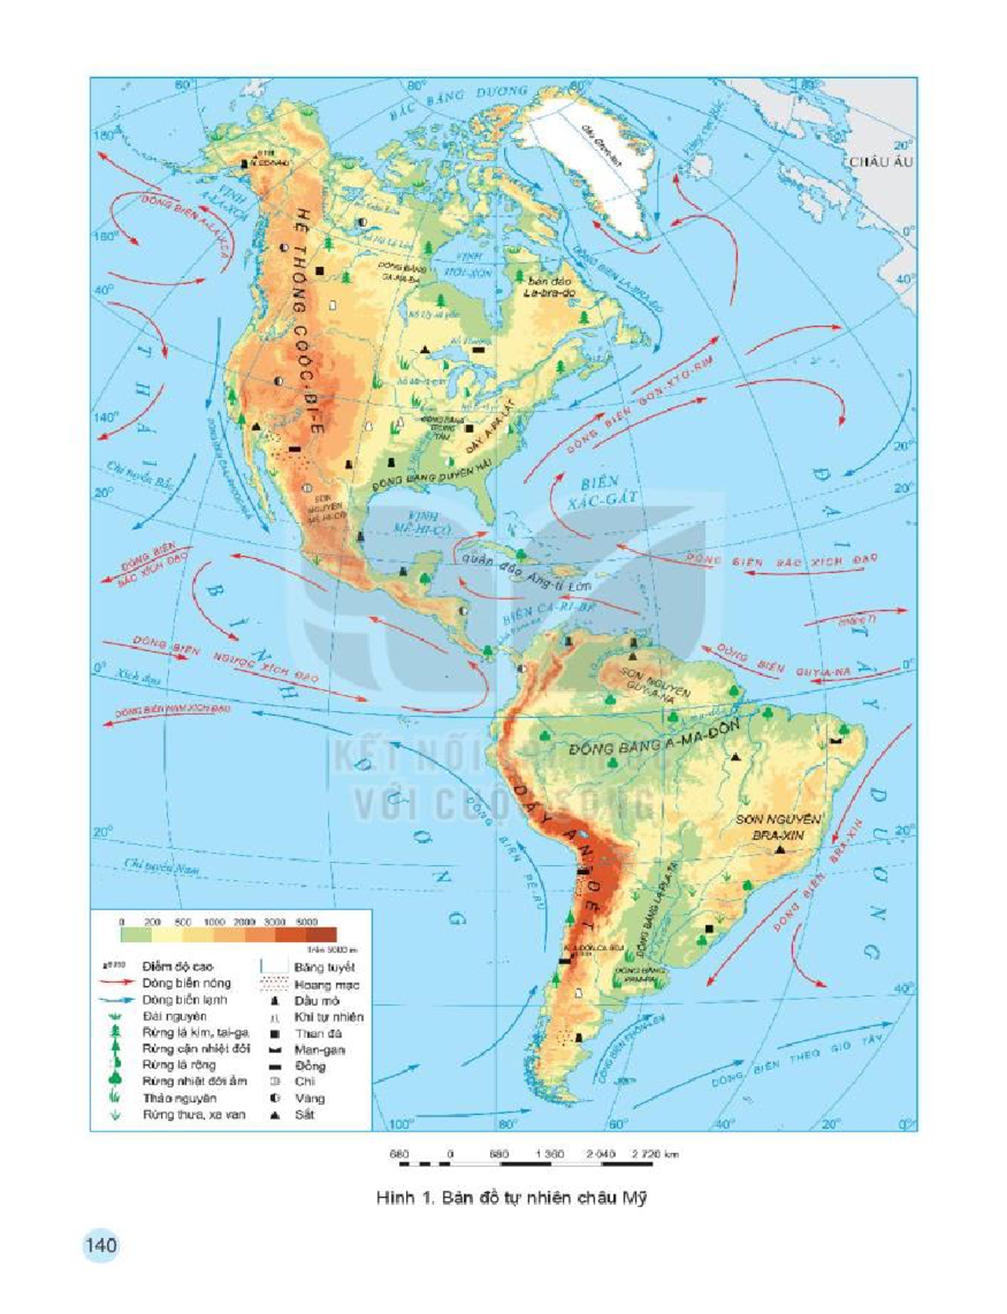 Quan sát bản đồ tự nhiên châu Mỹ trang 140 và đọc thông tin